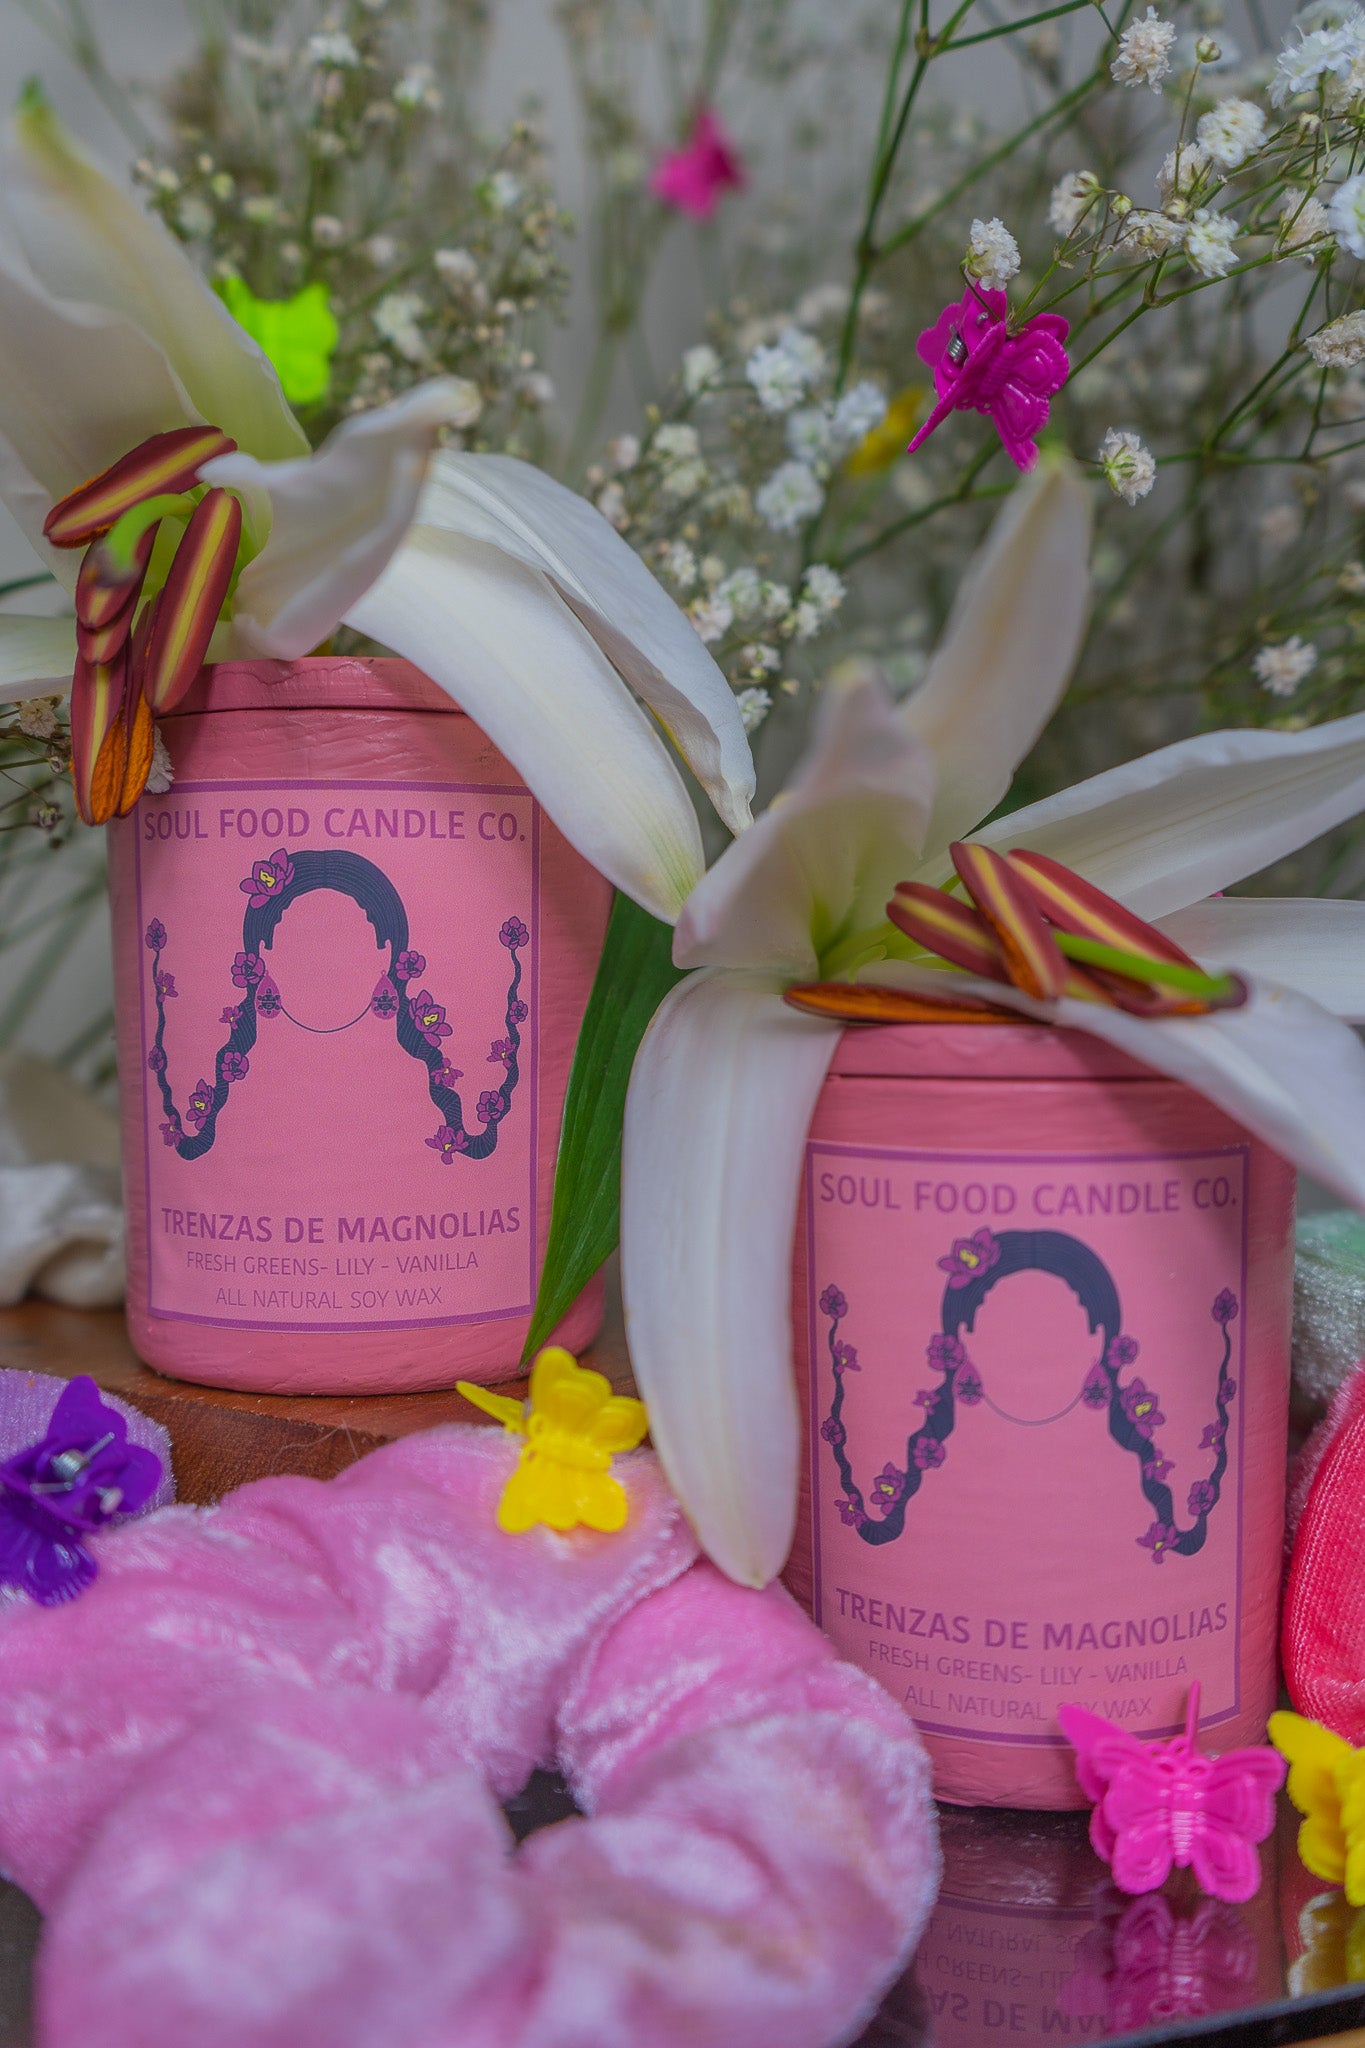 Trenzas De Magnolias - Soul Food Candle Company